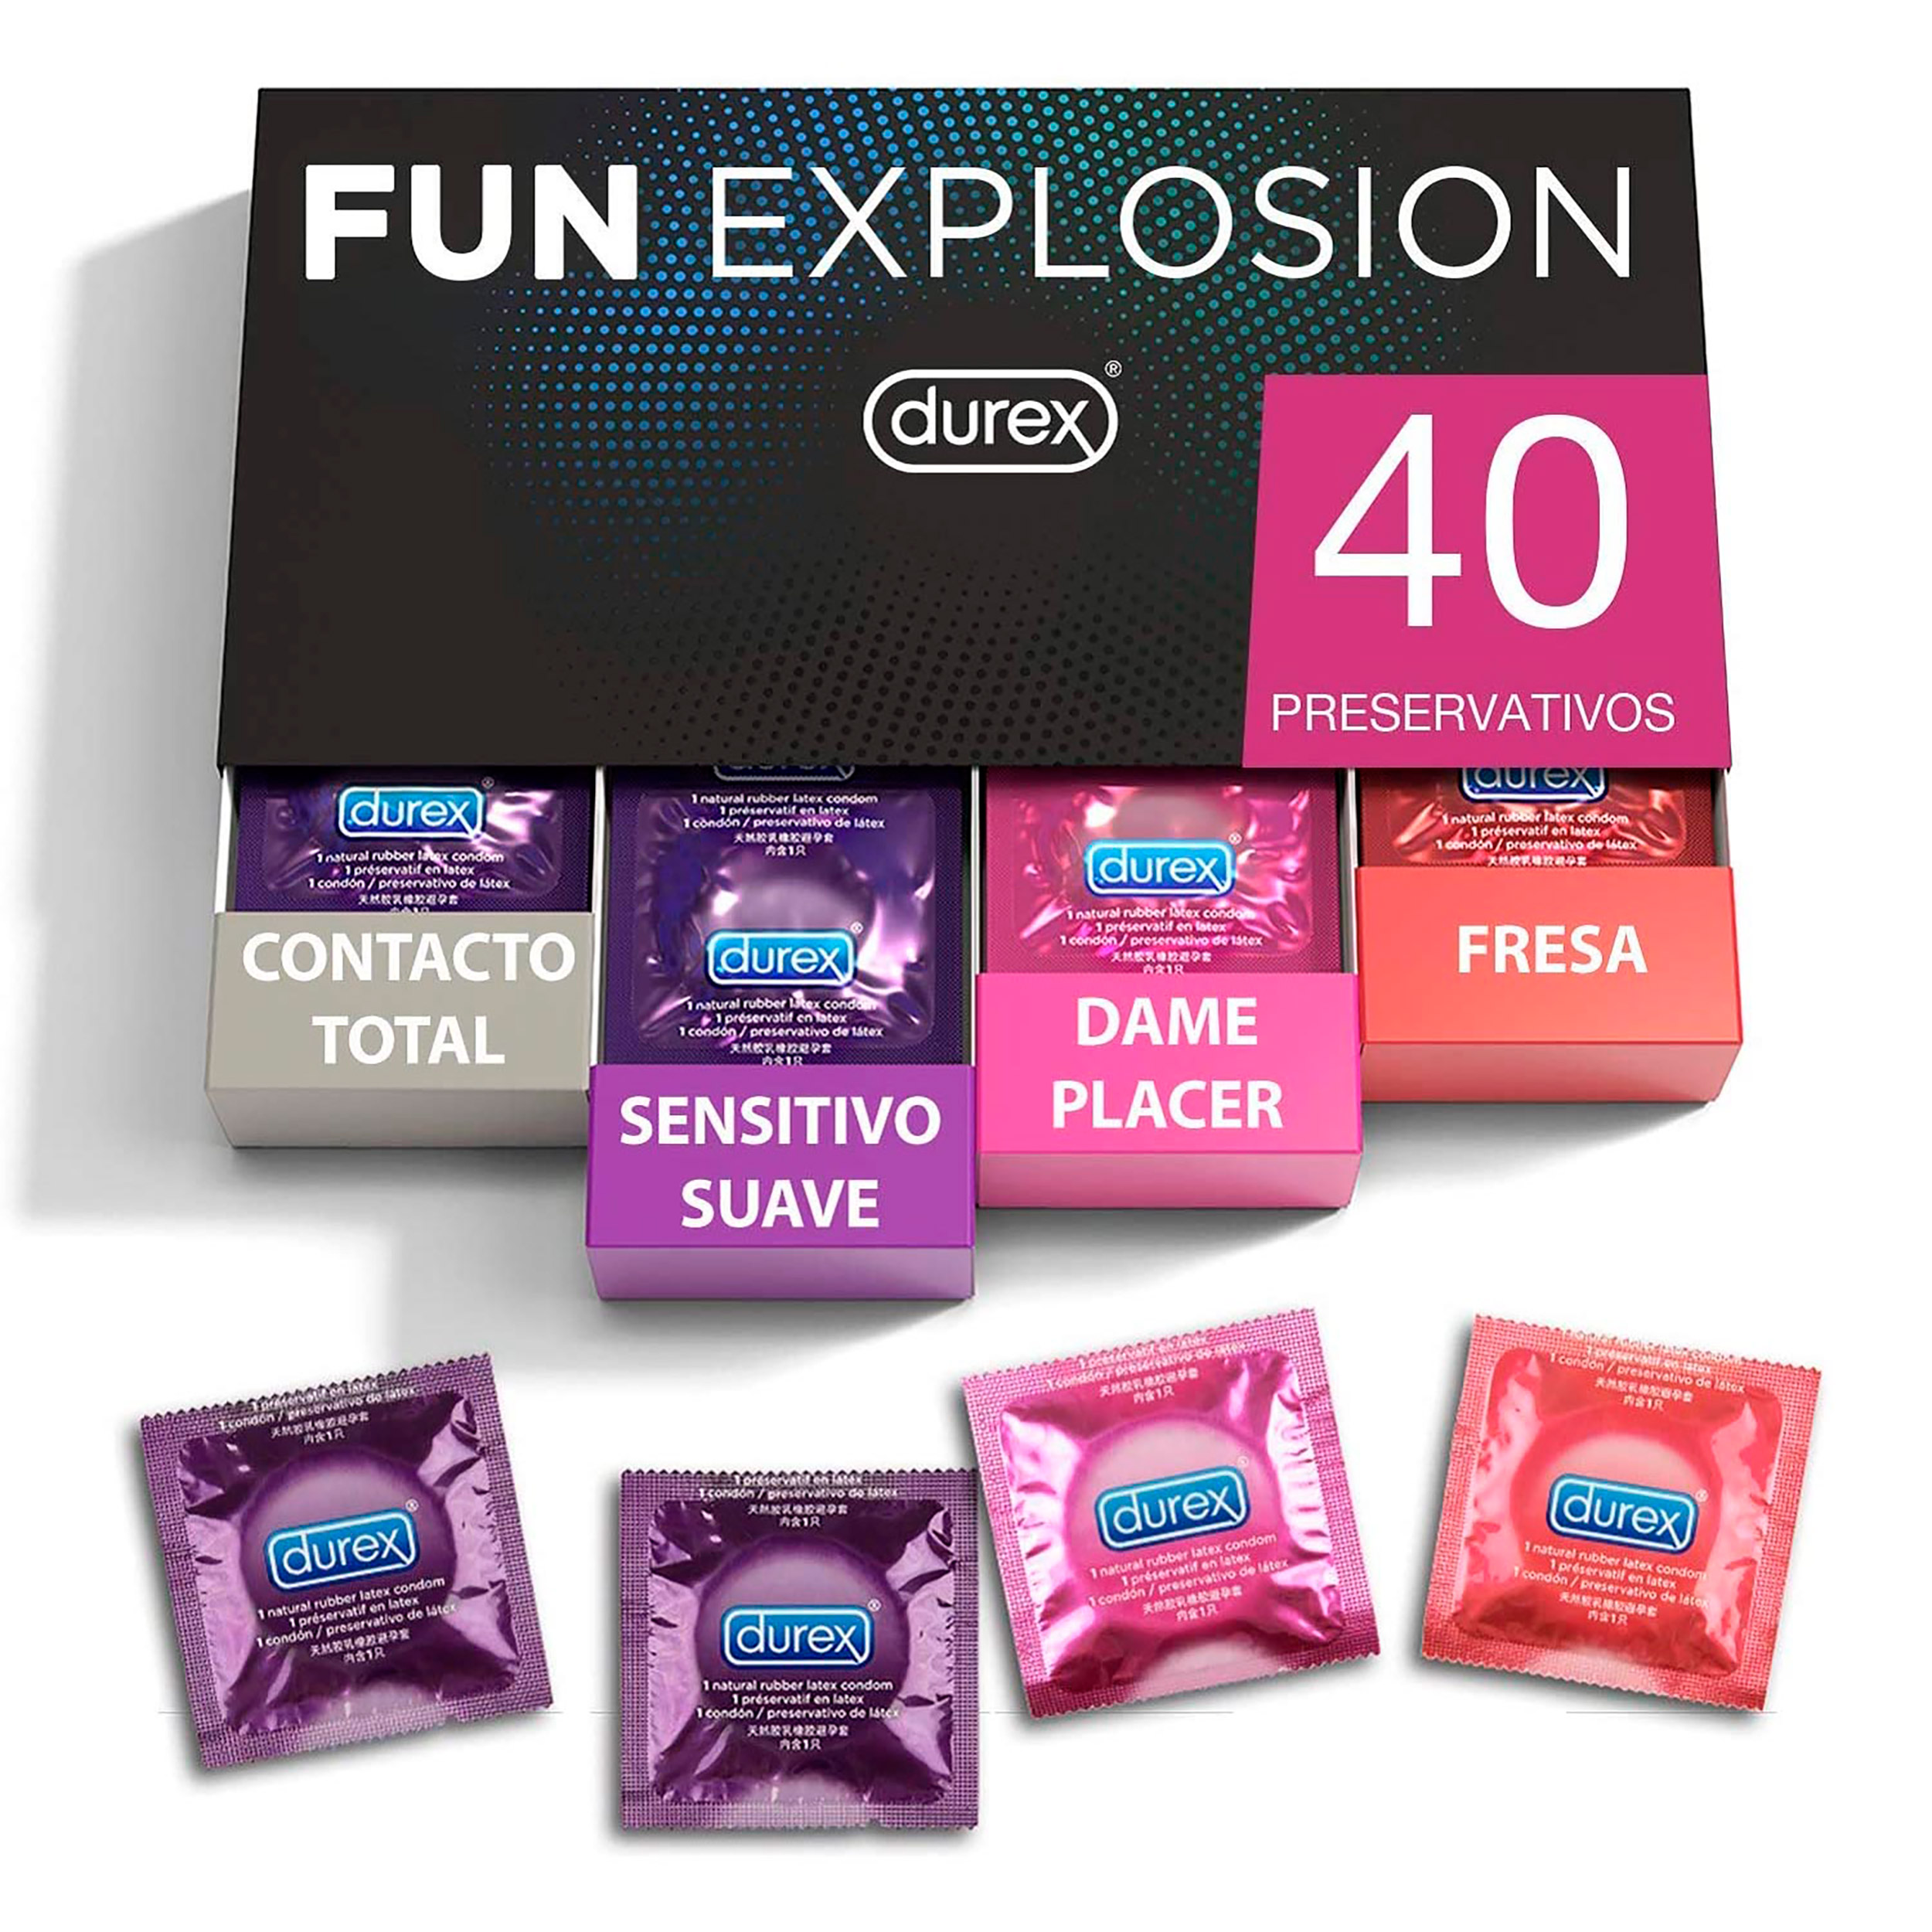 Durex - Durex - Fun Explosion, Pack Preservativos Sabor Fresa, Dame Placer, Sensitivo Suave y Contacto Total, 40 Condones, 52 y 56 mm